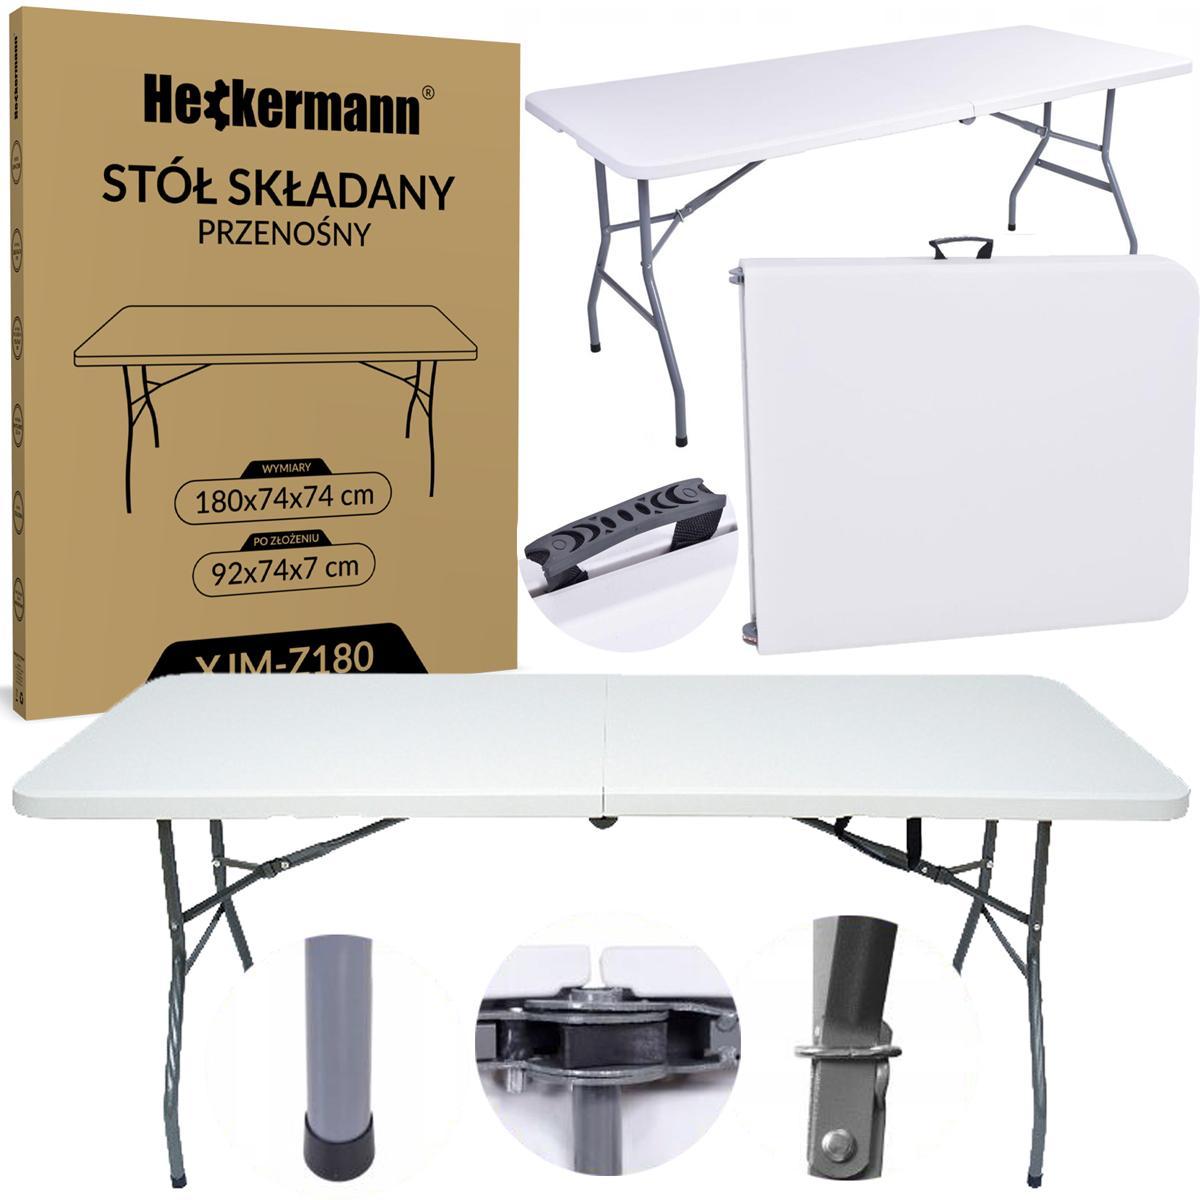 Stół składany cateringowy 180x74cm Heckermann XJM-Z180 Biały nr. 1